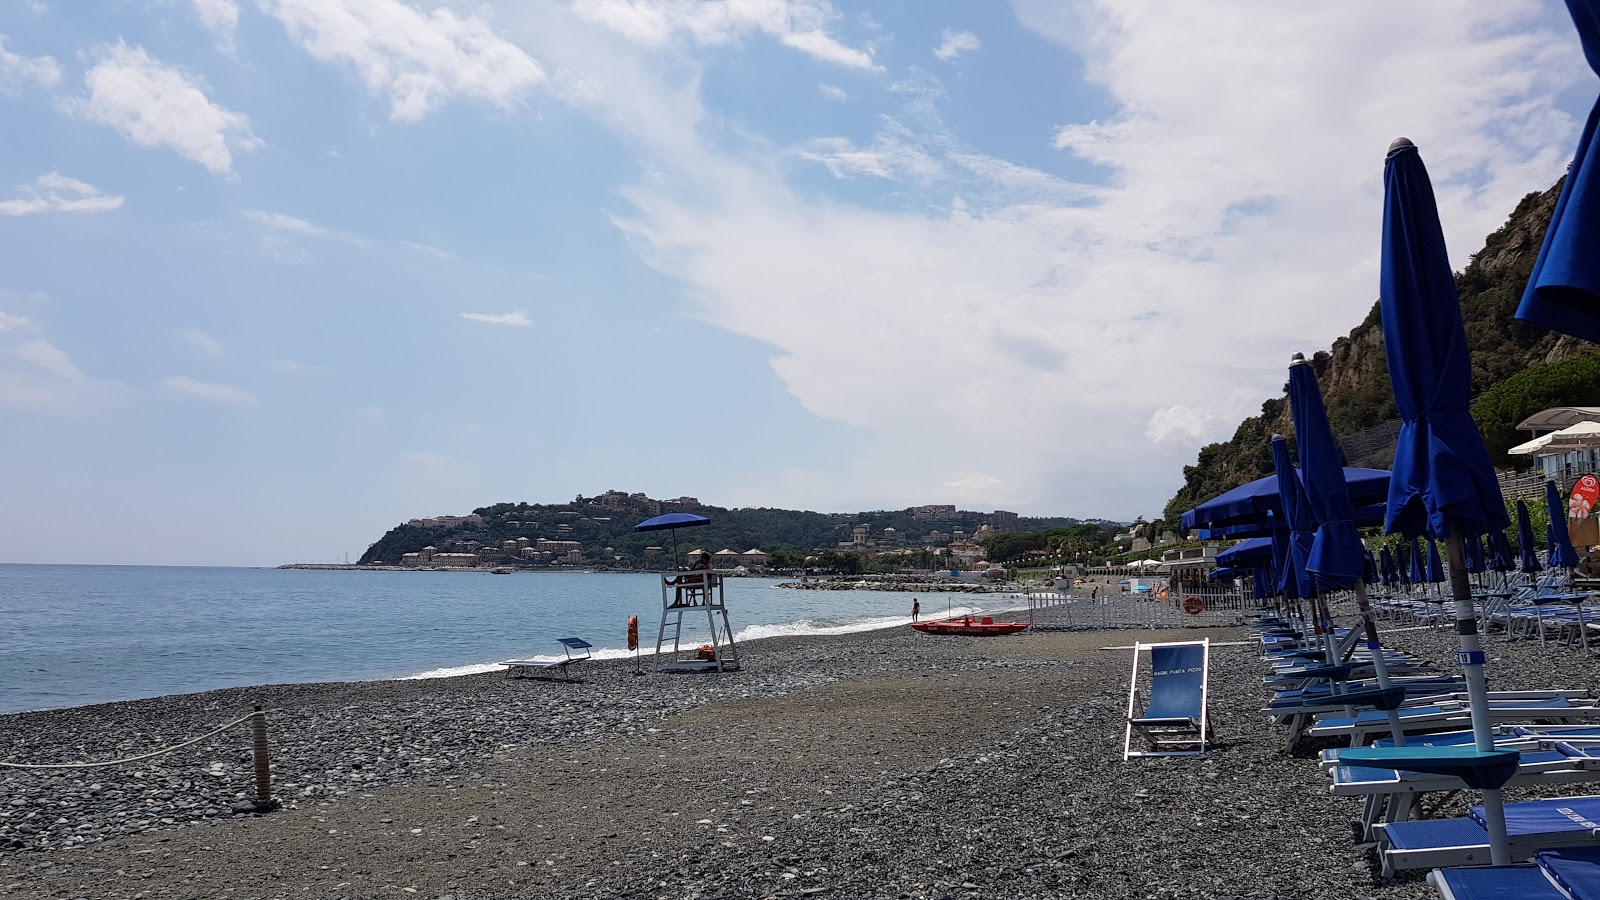 Spiaggia Olanda'in fotoğrafı plaj tatil beldesi alanı